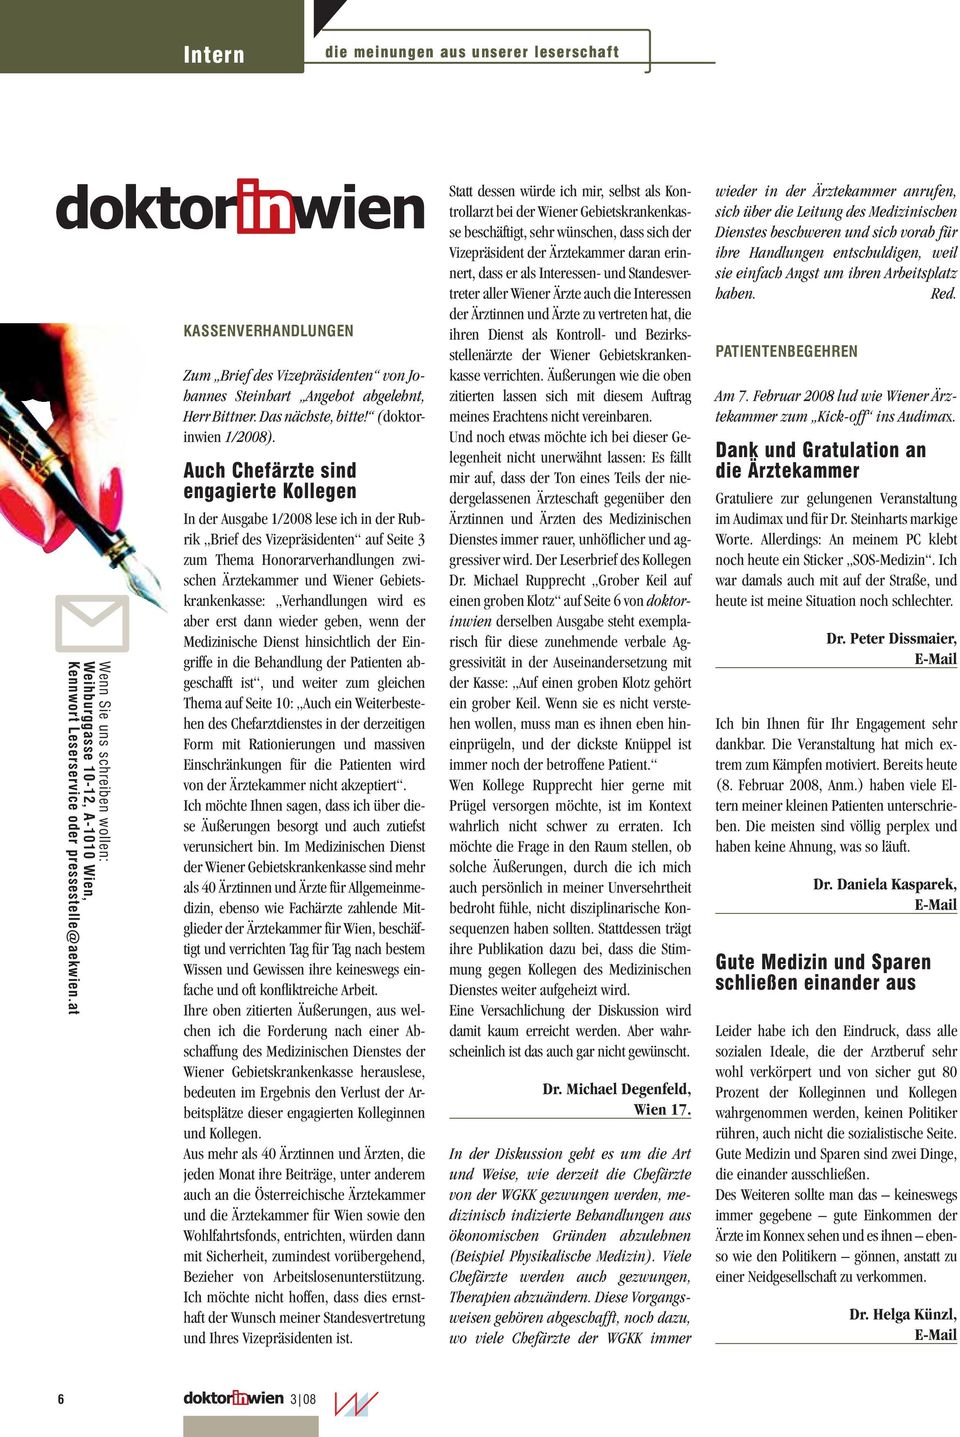 Auch Chefärzte sind engagierte Kollegen In der Ausgabe 1/2008 lese ich in der Rubrik Brief des Vizepräsidenten auf Seite 3 zum Thema Honorarverhandlungen zwischen Ärztekammer und Wiener